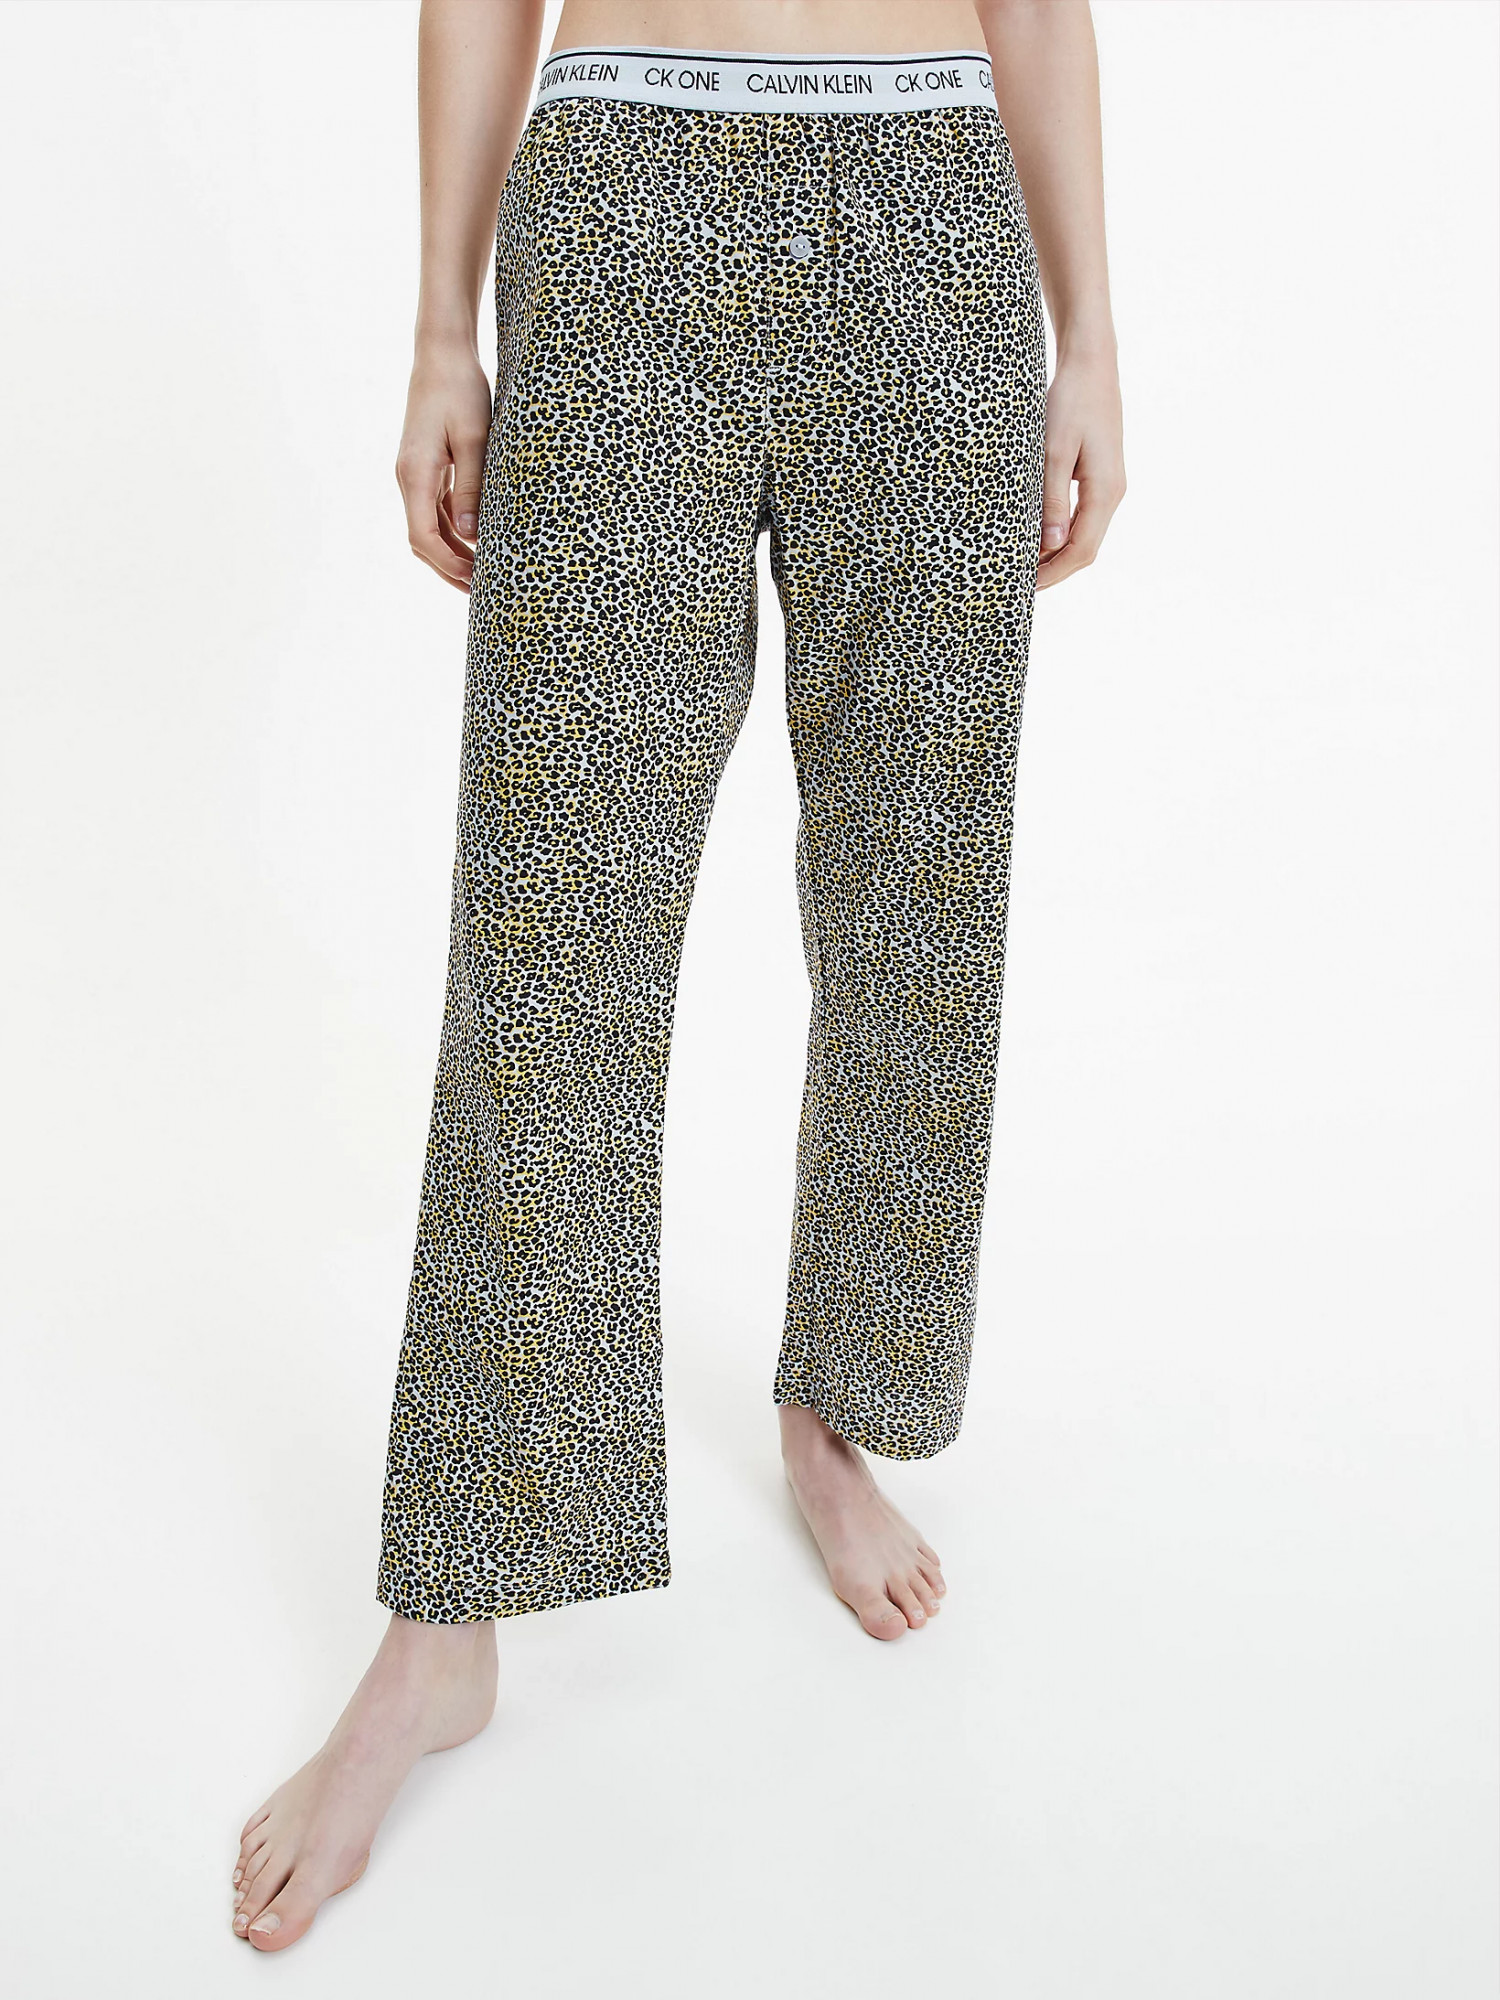 Dámské pyžamové kalhoty QS6433E - V4L Fialová se zvířecím vzorem - Calvin Klein fialová vzor L